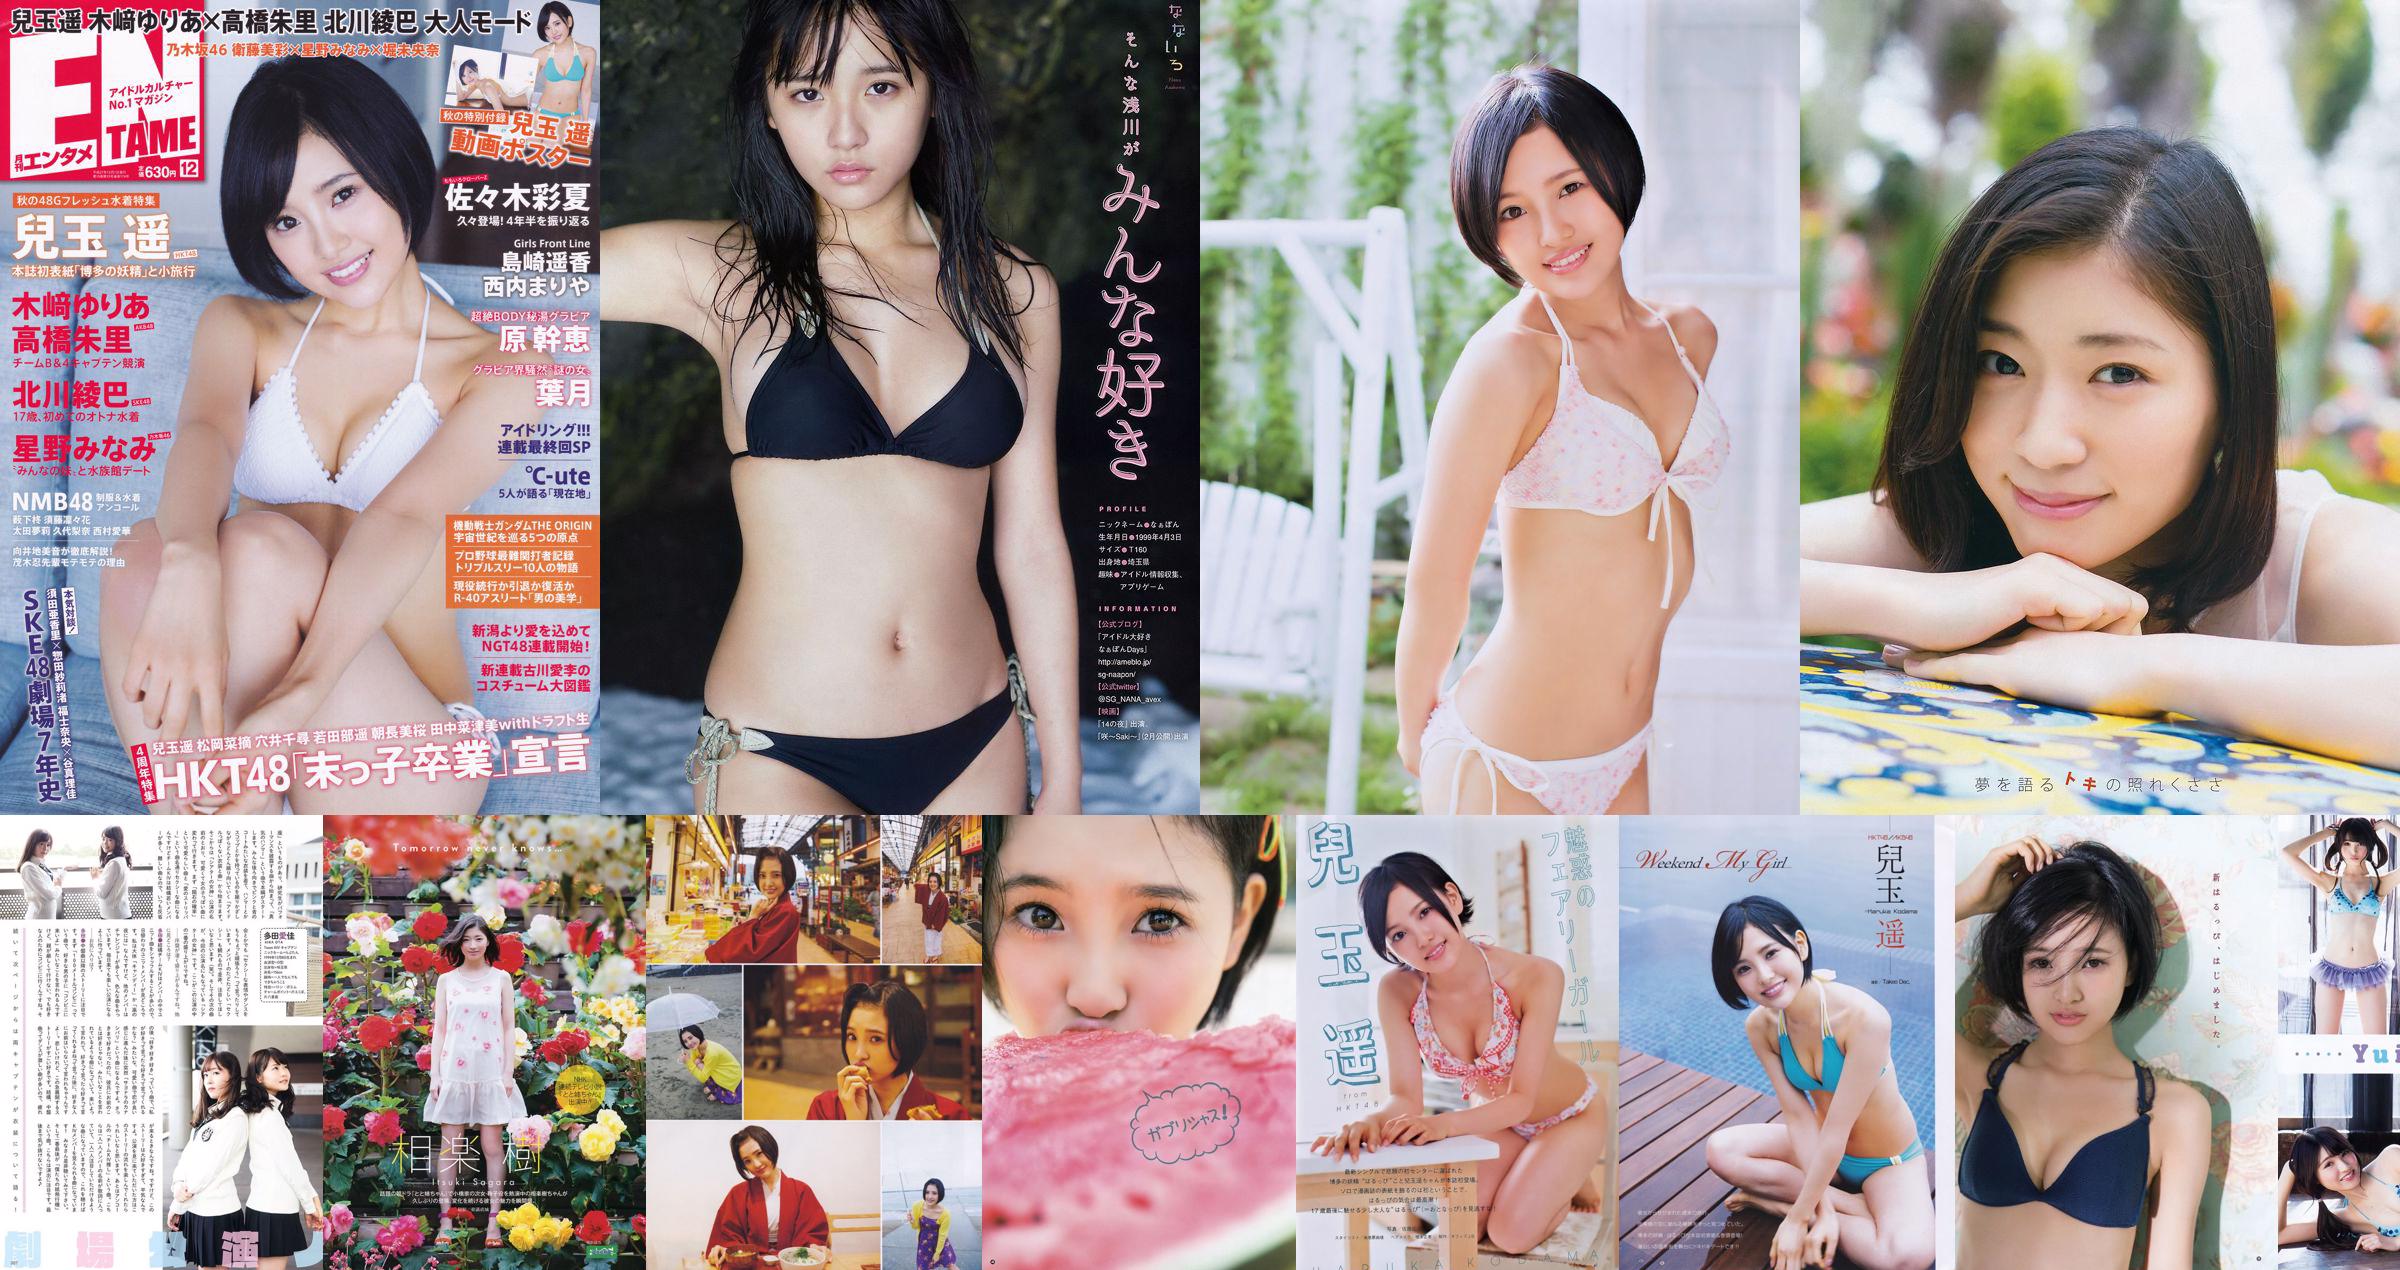 [Young Gangan] Haruka Kodama Itsuki Sagara 2016 No.11 Photo Magazine No.ca995f Página 3